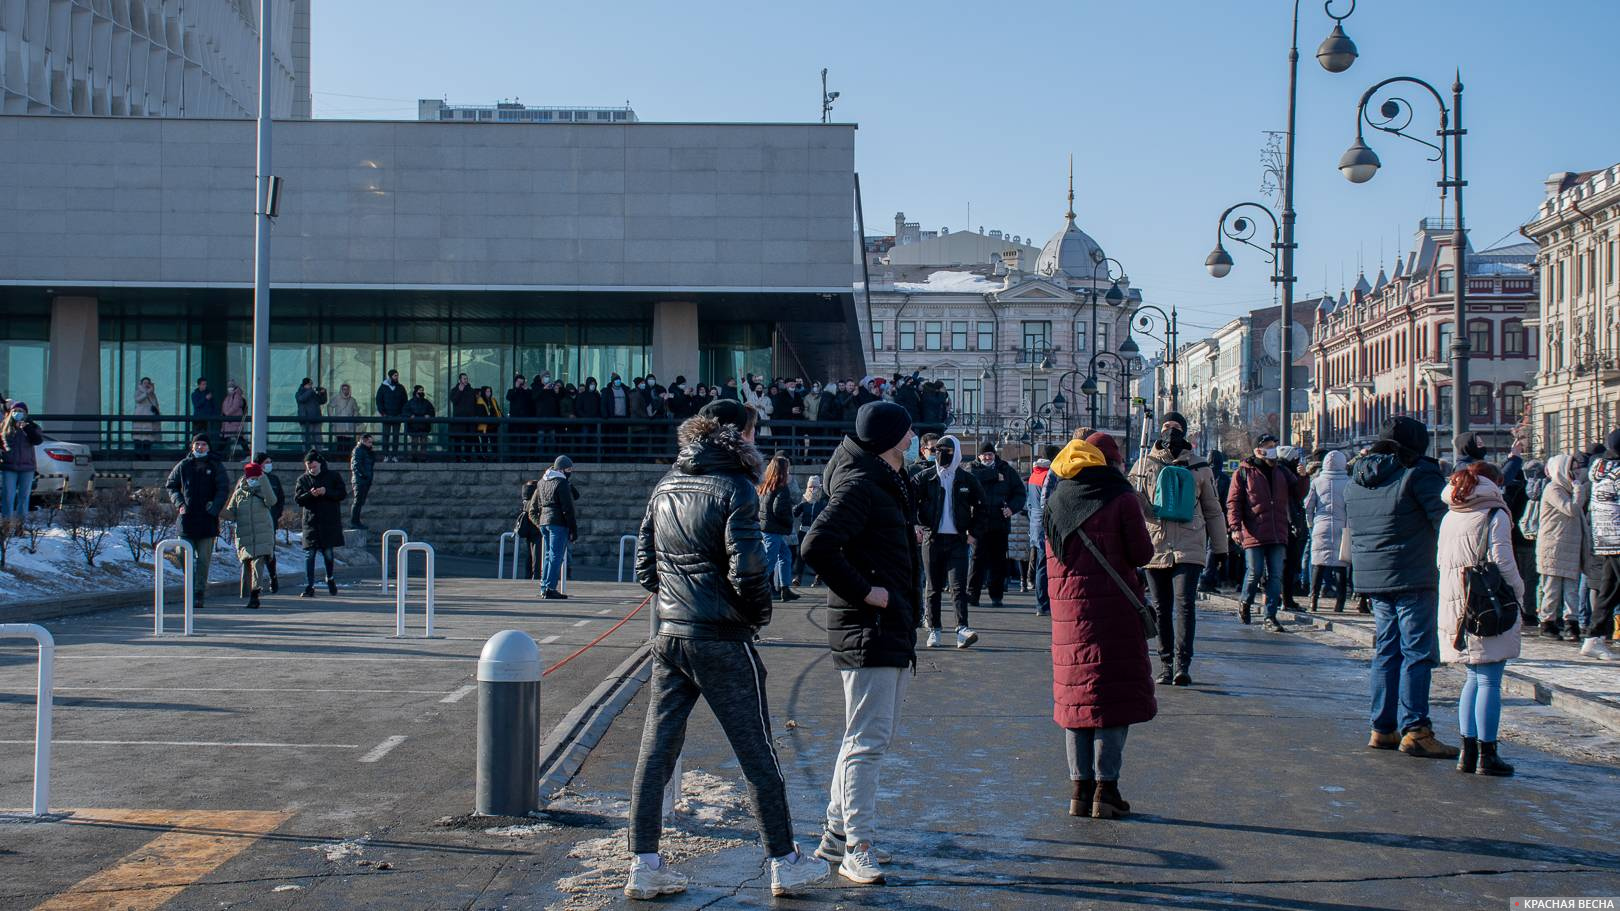 Часть протестующих на крыльце здания администрации Приморского края, Владивосток, 23.01.2021